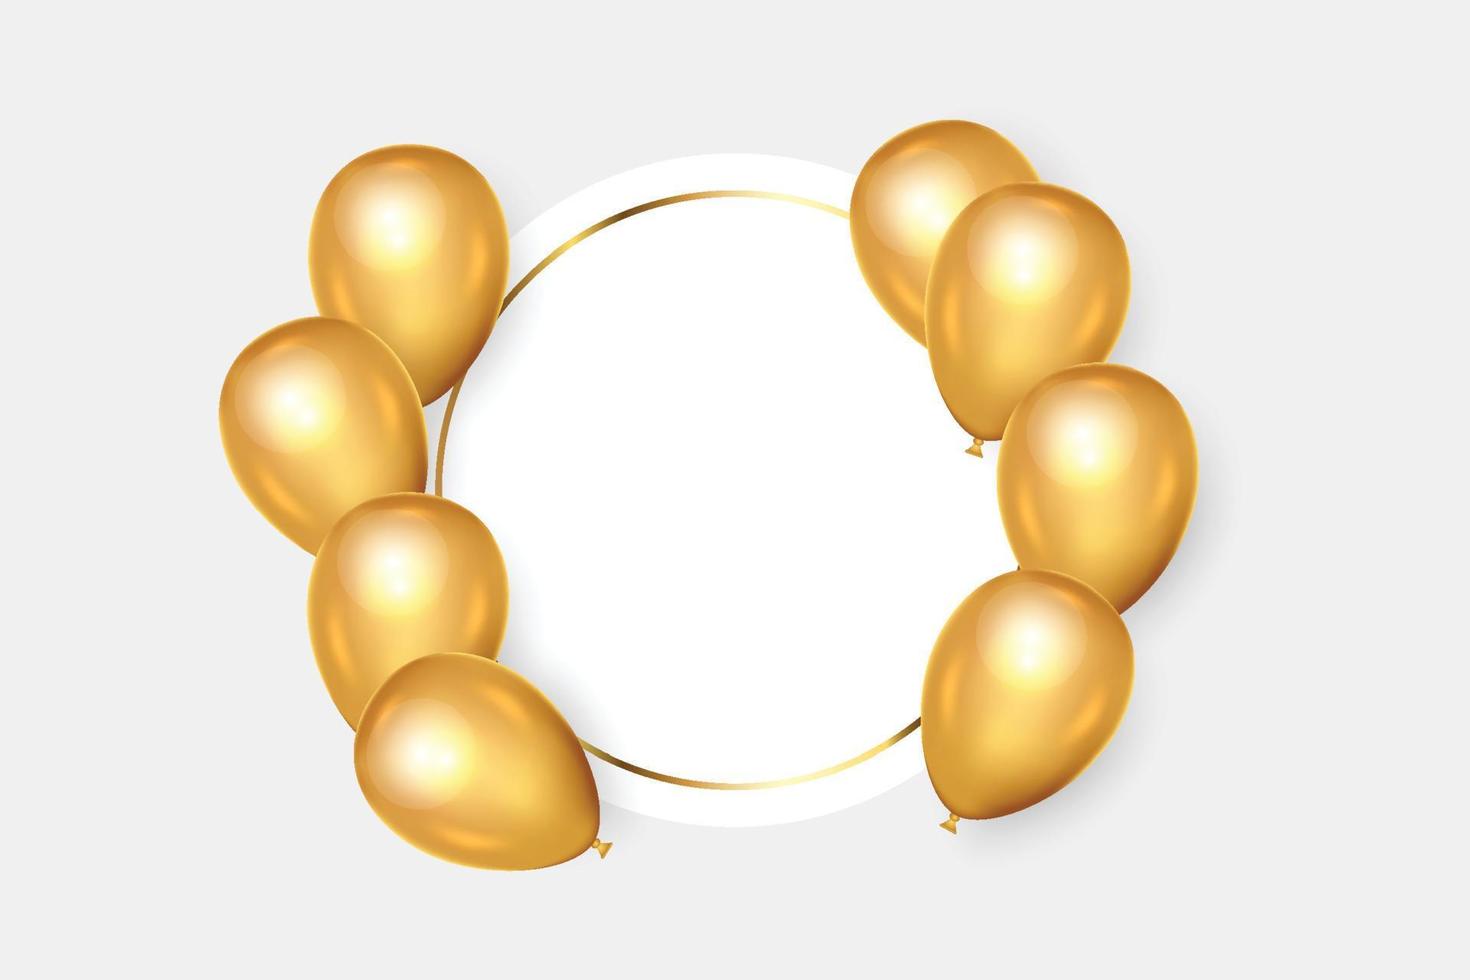 Geburtstagsrahmen mit goldenen Luftballons und Fotorahmen vektor